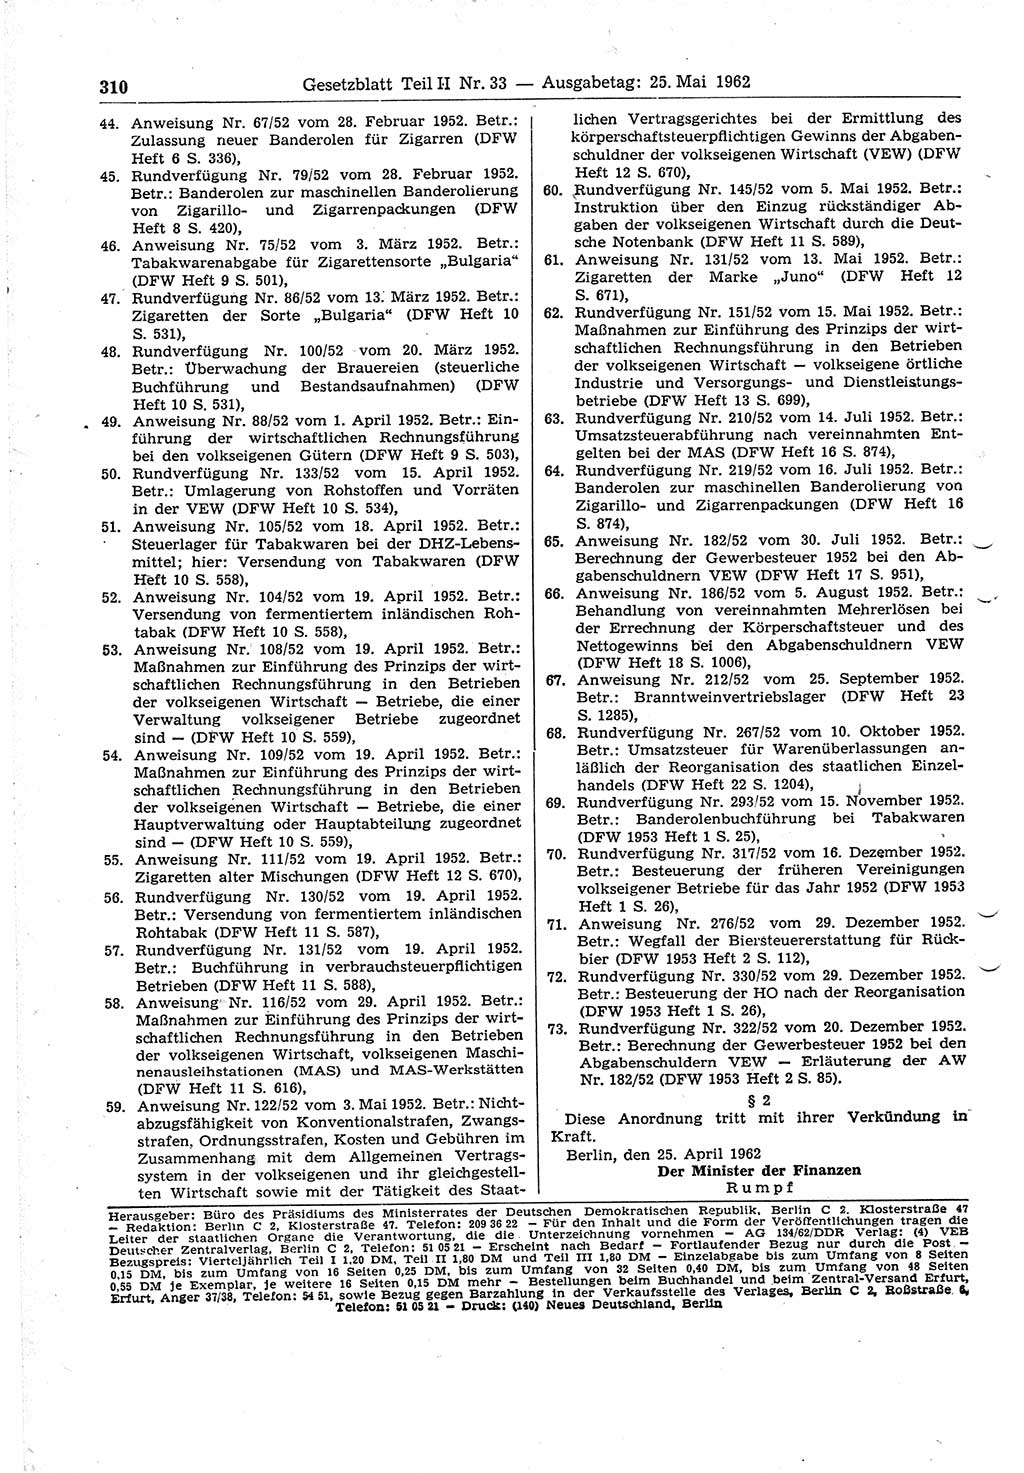 Gesetzblatt (GBl.) der Deutschen Demokratischen Republik (DDR) Teil ⅠⅠ 1962, Seite 310 (GBl. DDR ⅠⅠ 1962, S. 310)